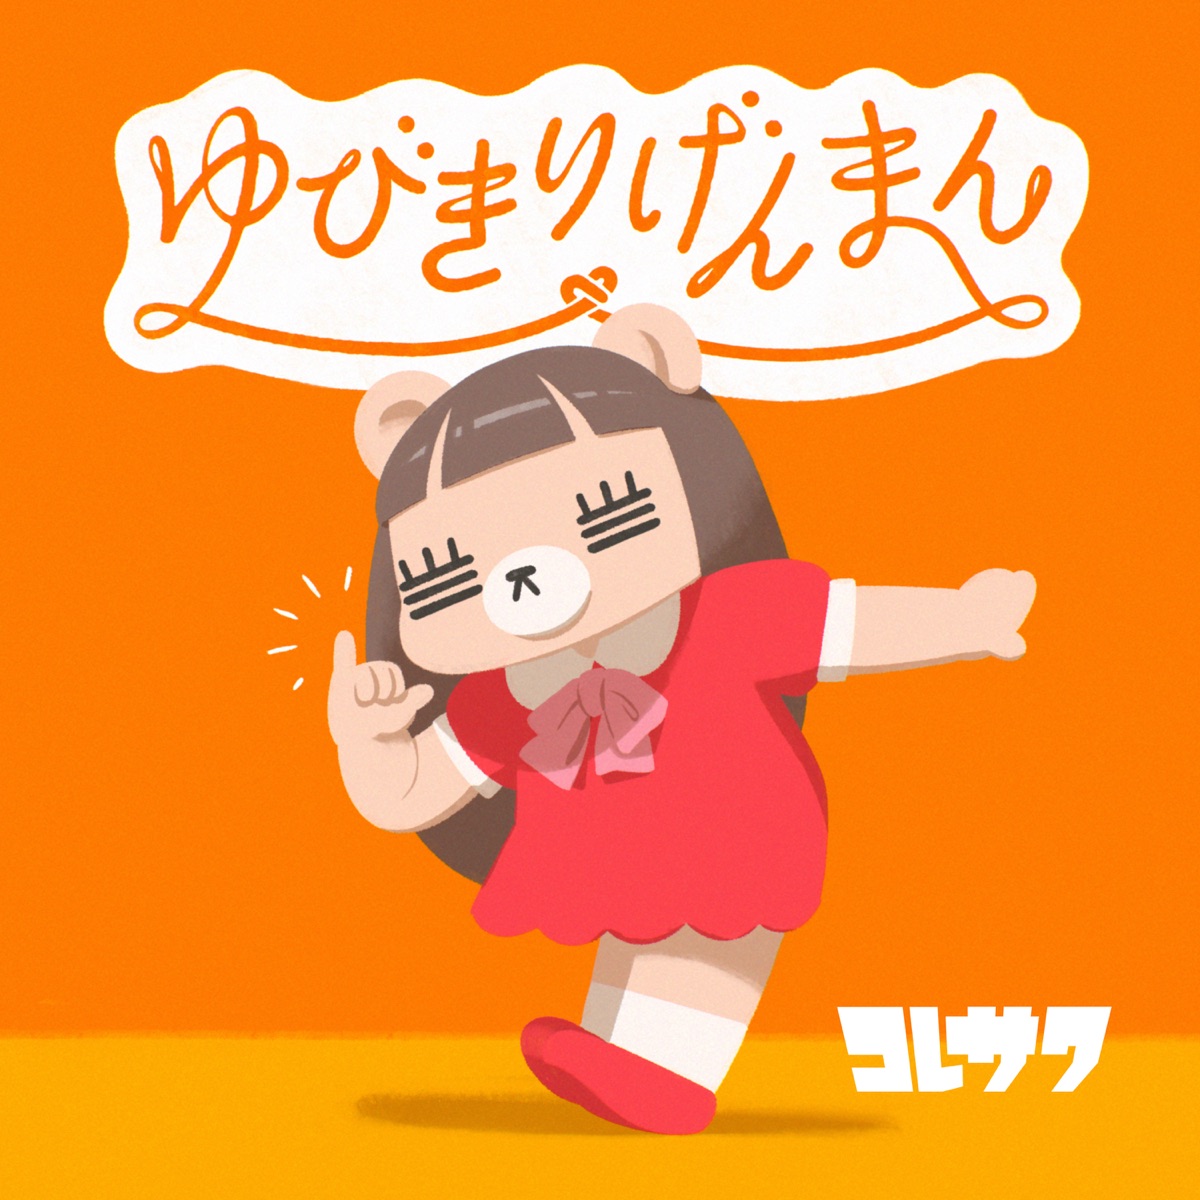 Cover art for『Koresawa - ゆびきりげんまん』from the release『Yubikiri Genman